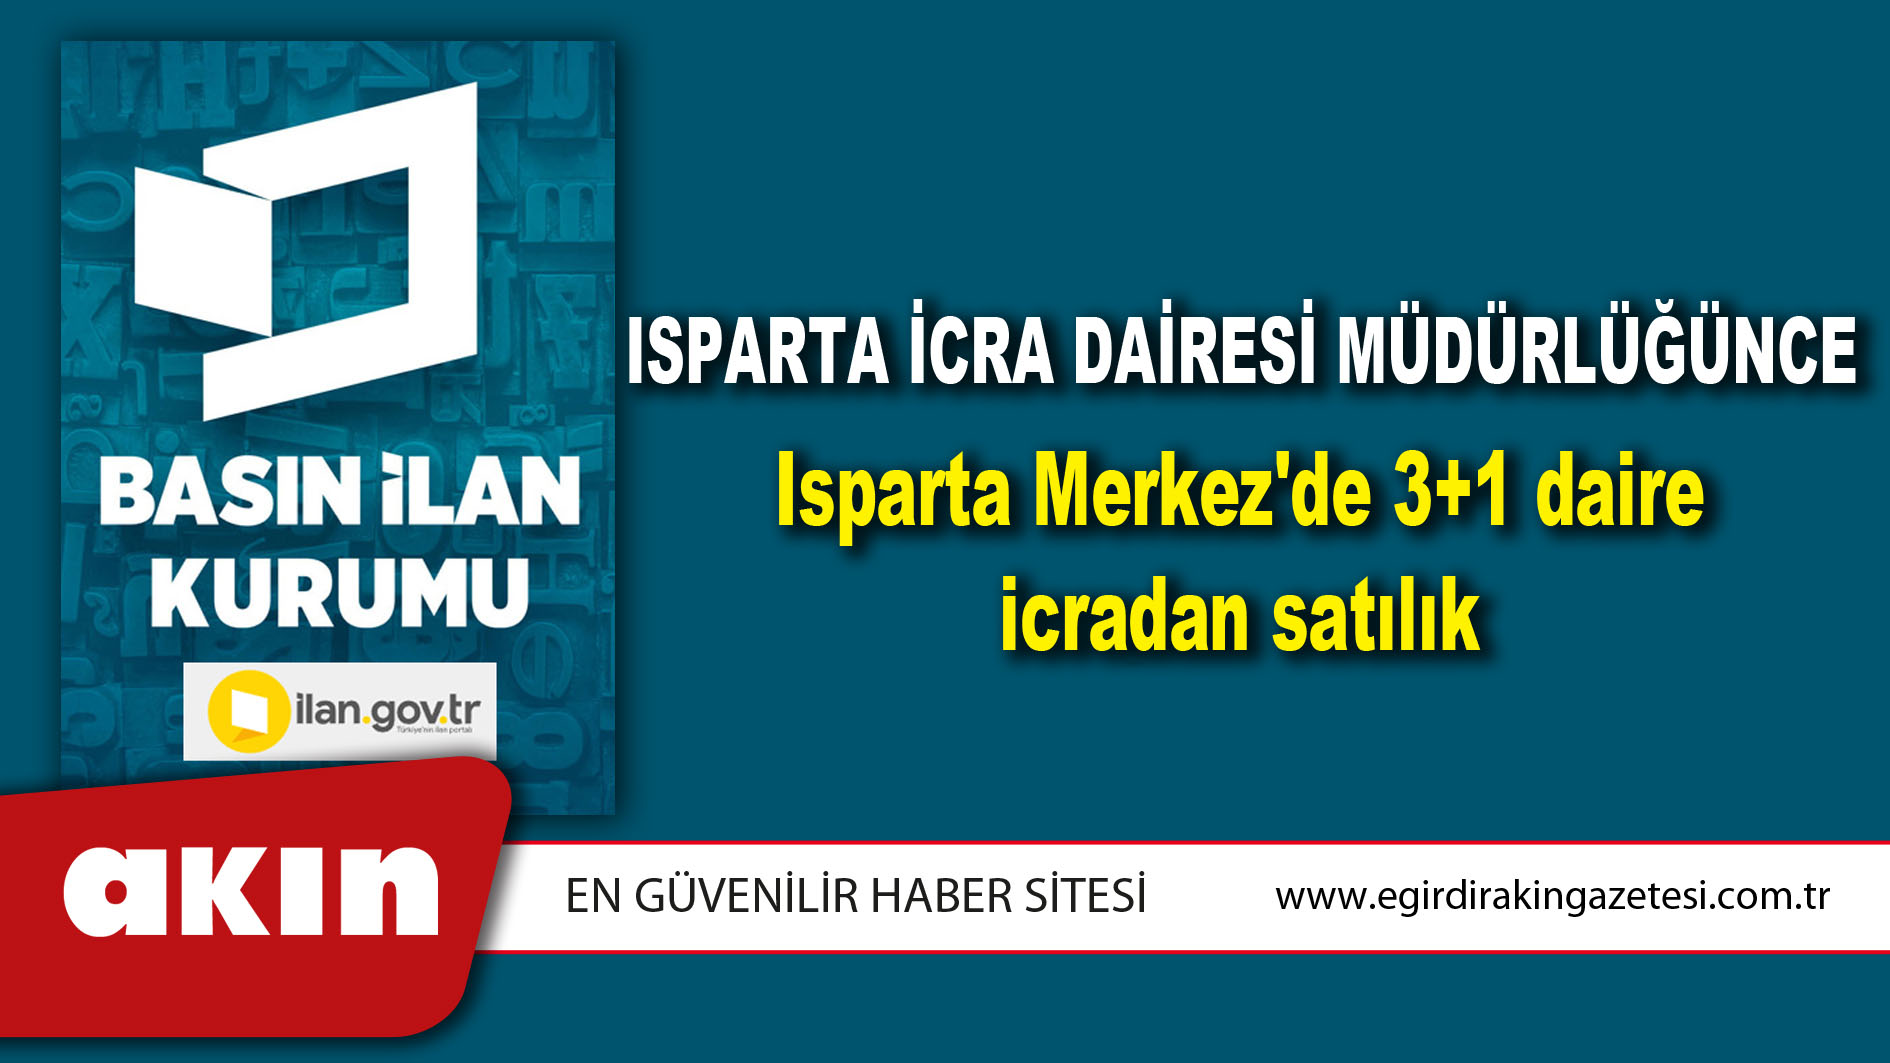 Isparta İcra Dairesi Müdürlüğünce Isparta Merkez'de 3+1 daire icradan satılık